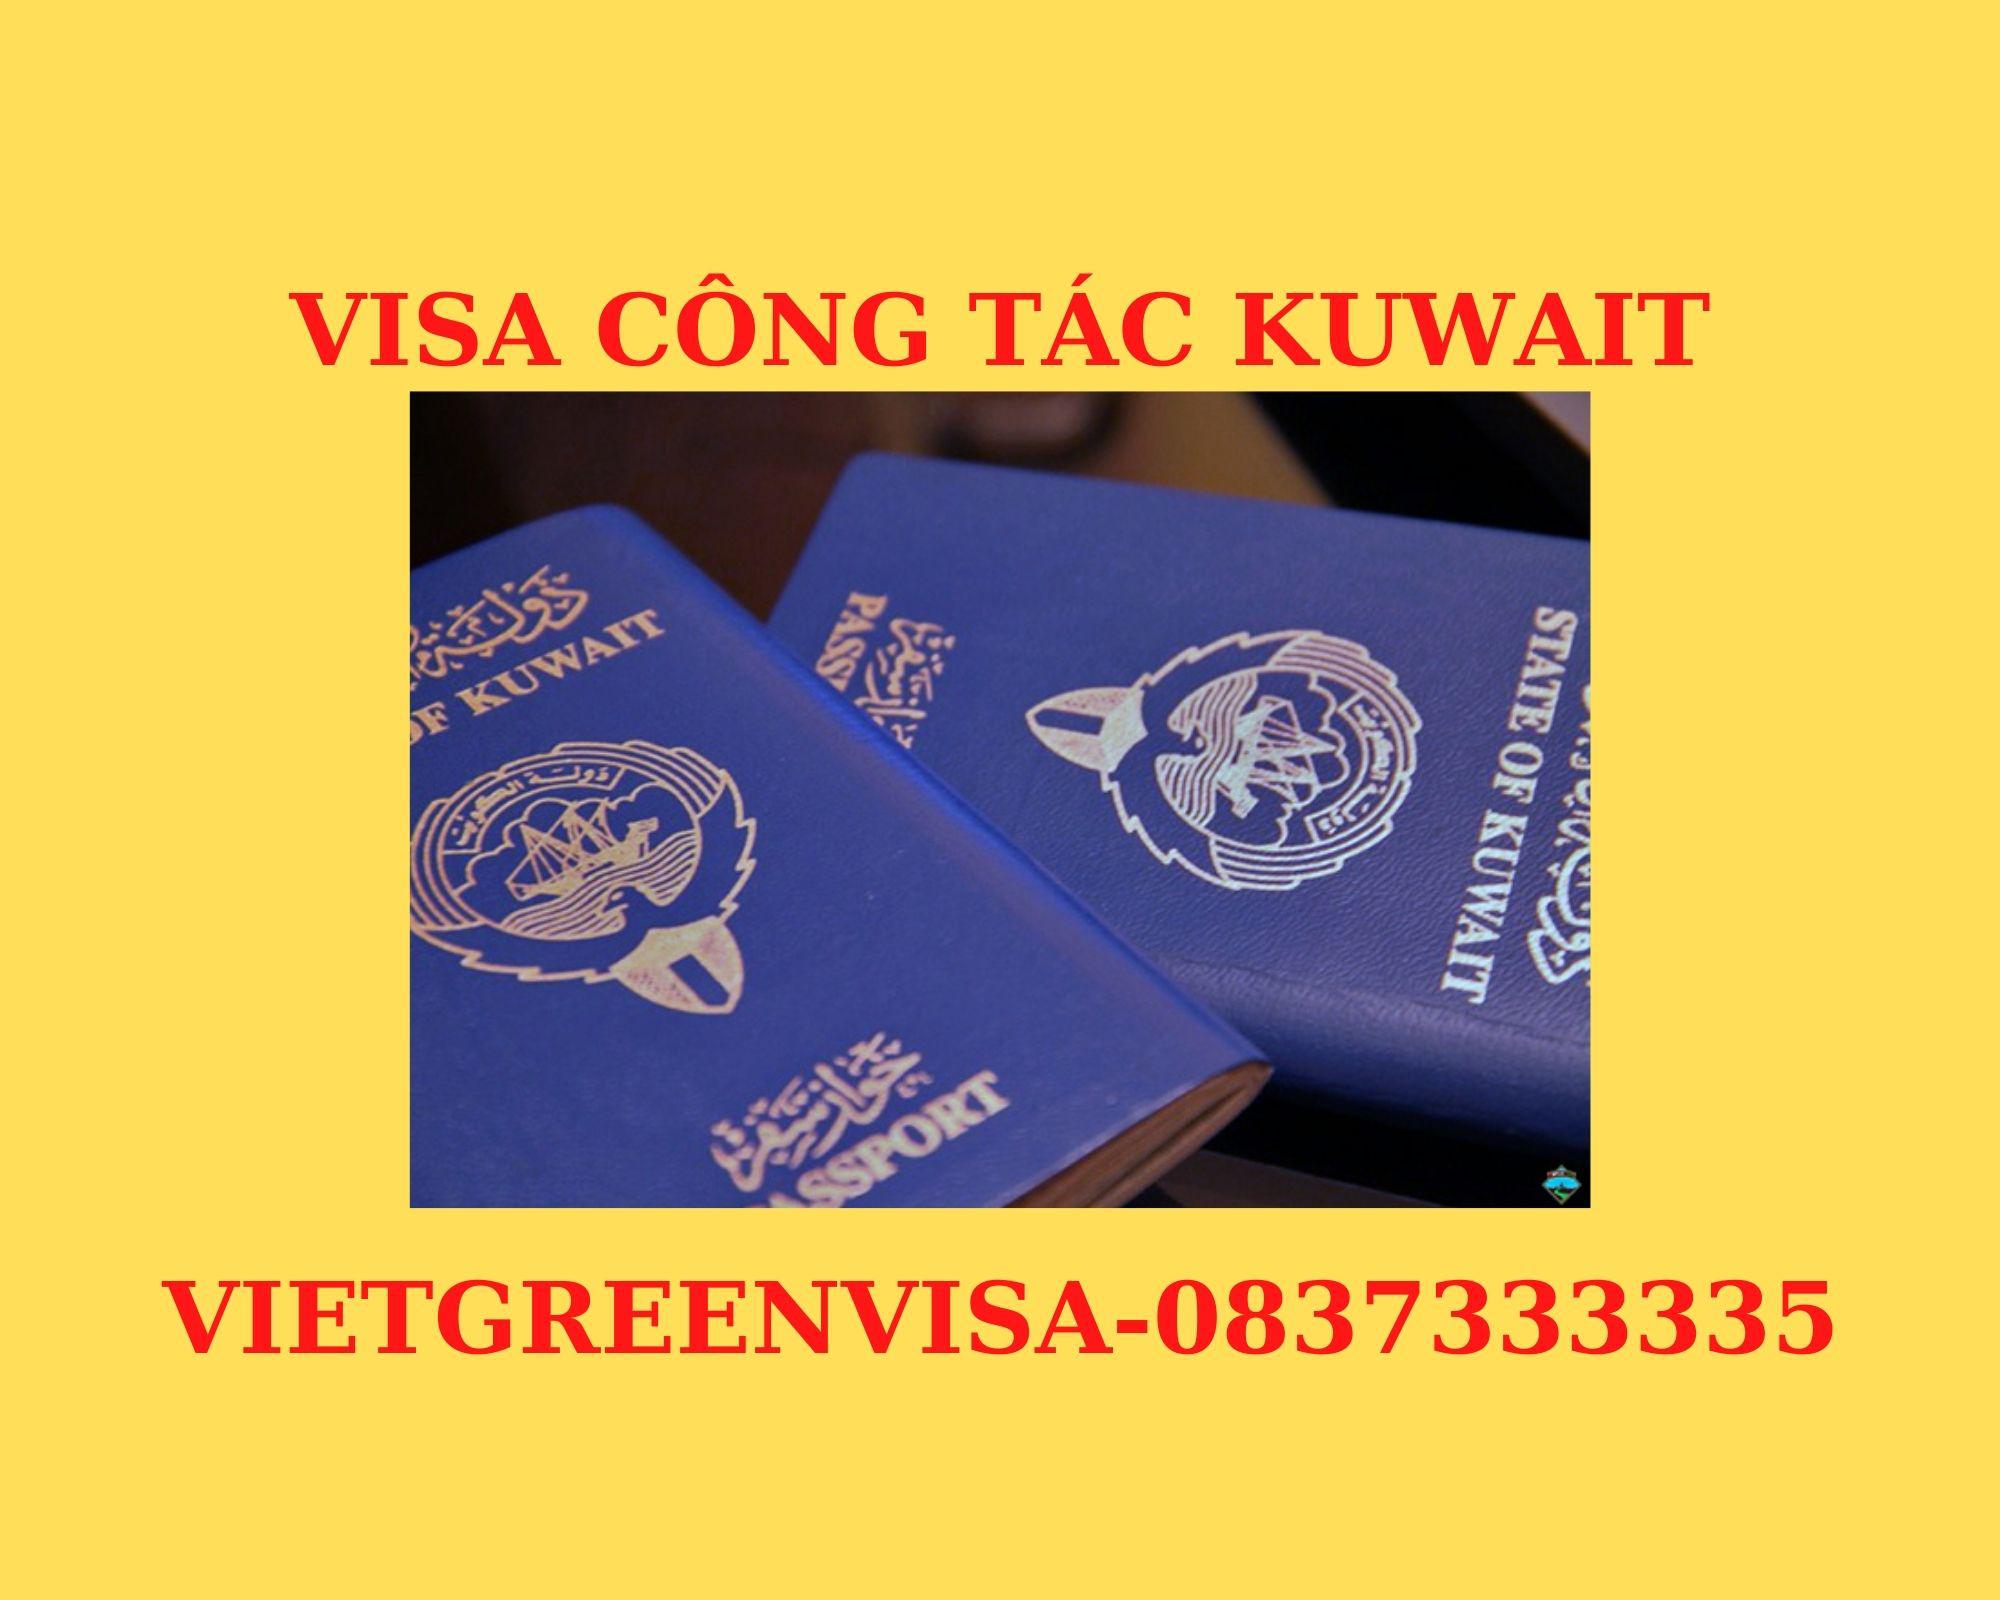 Dịch vụ visa Kuwait công tác dự hội chợ nhanh